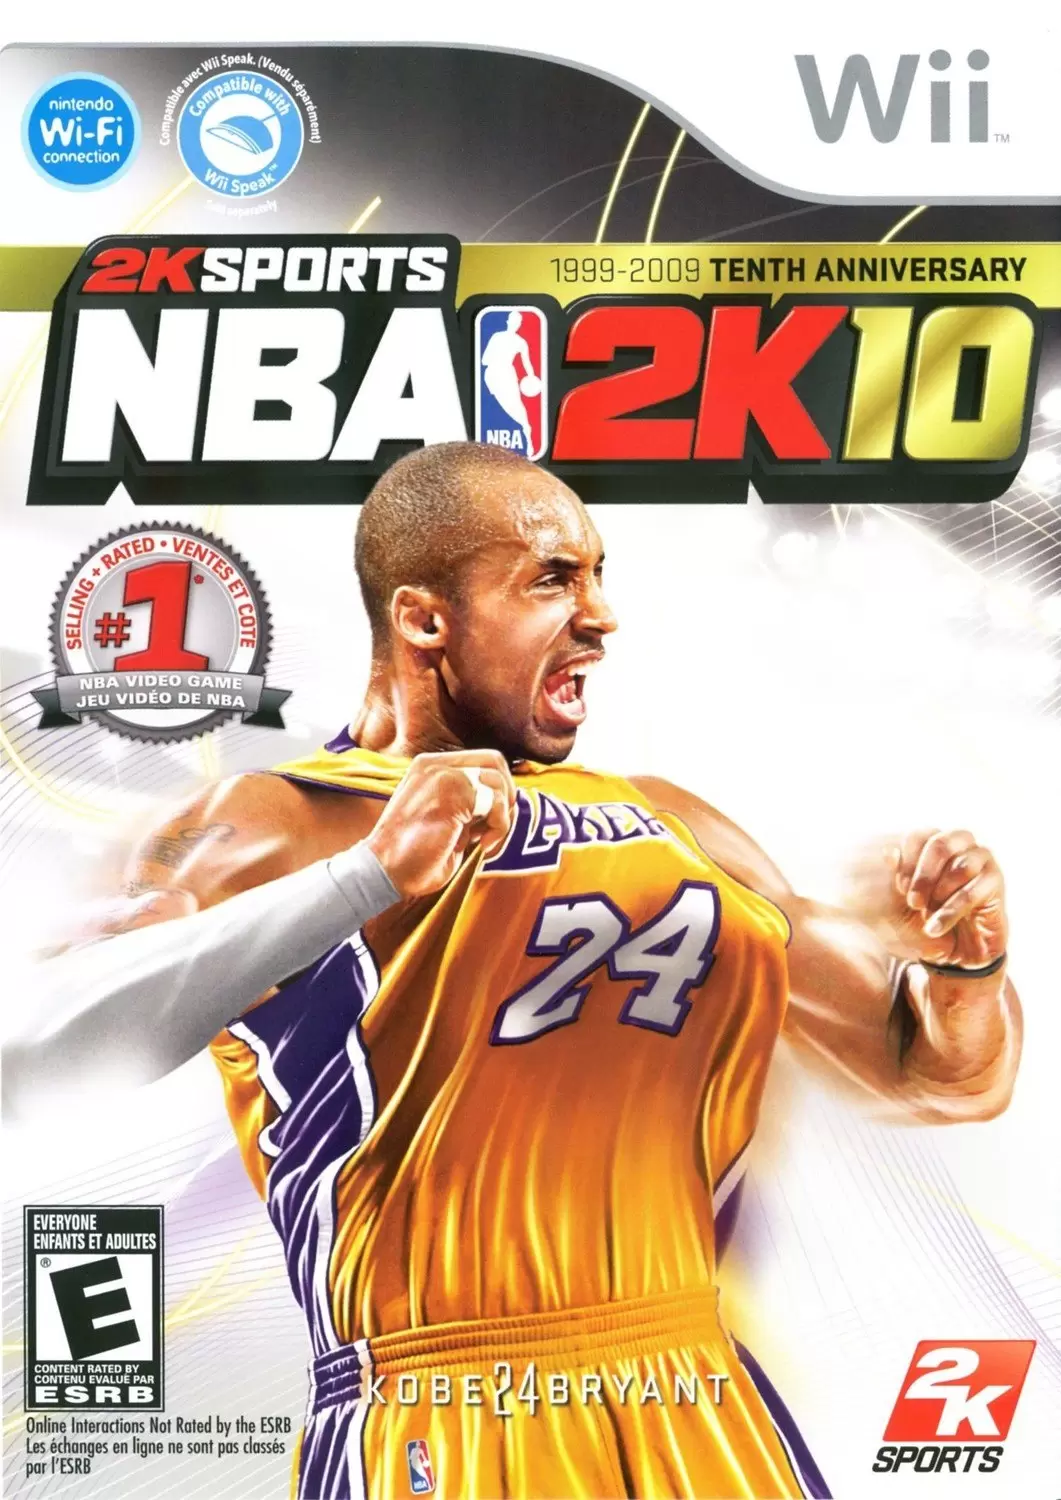 Nintendo Wii Games - NBA 2K10